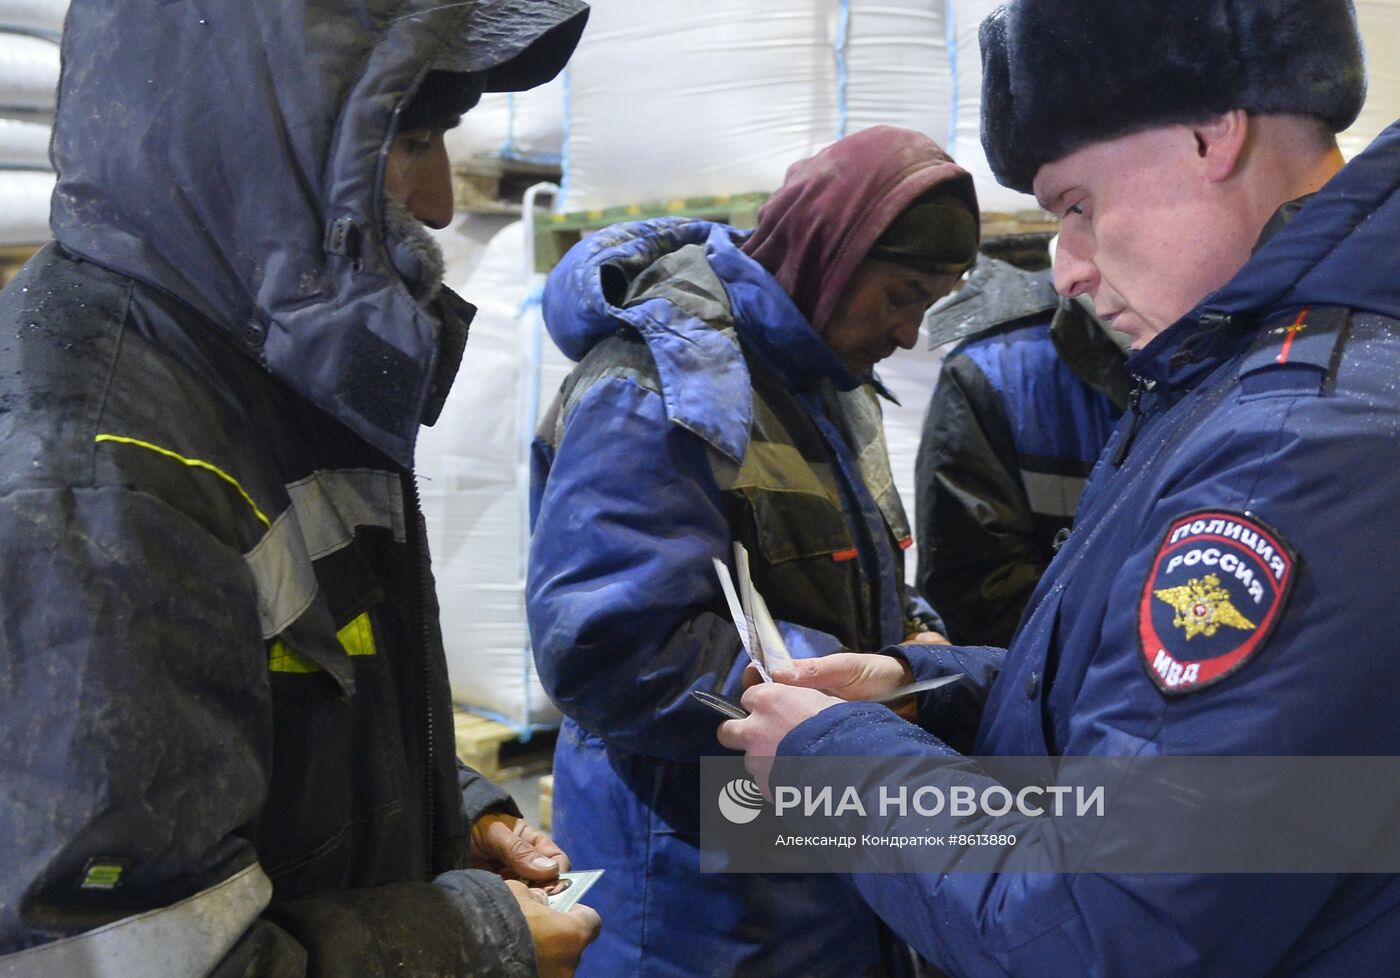 Рейд по выявлению незаконных трудовых мигрантов в Челябинске